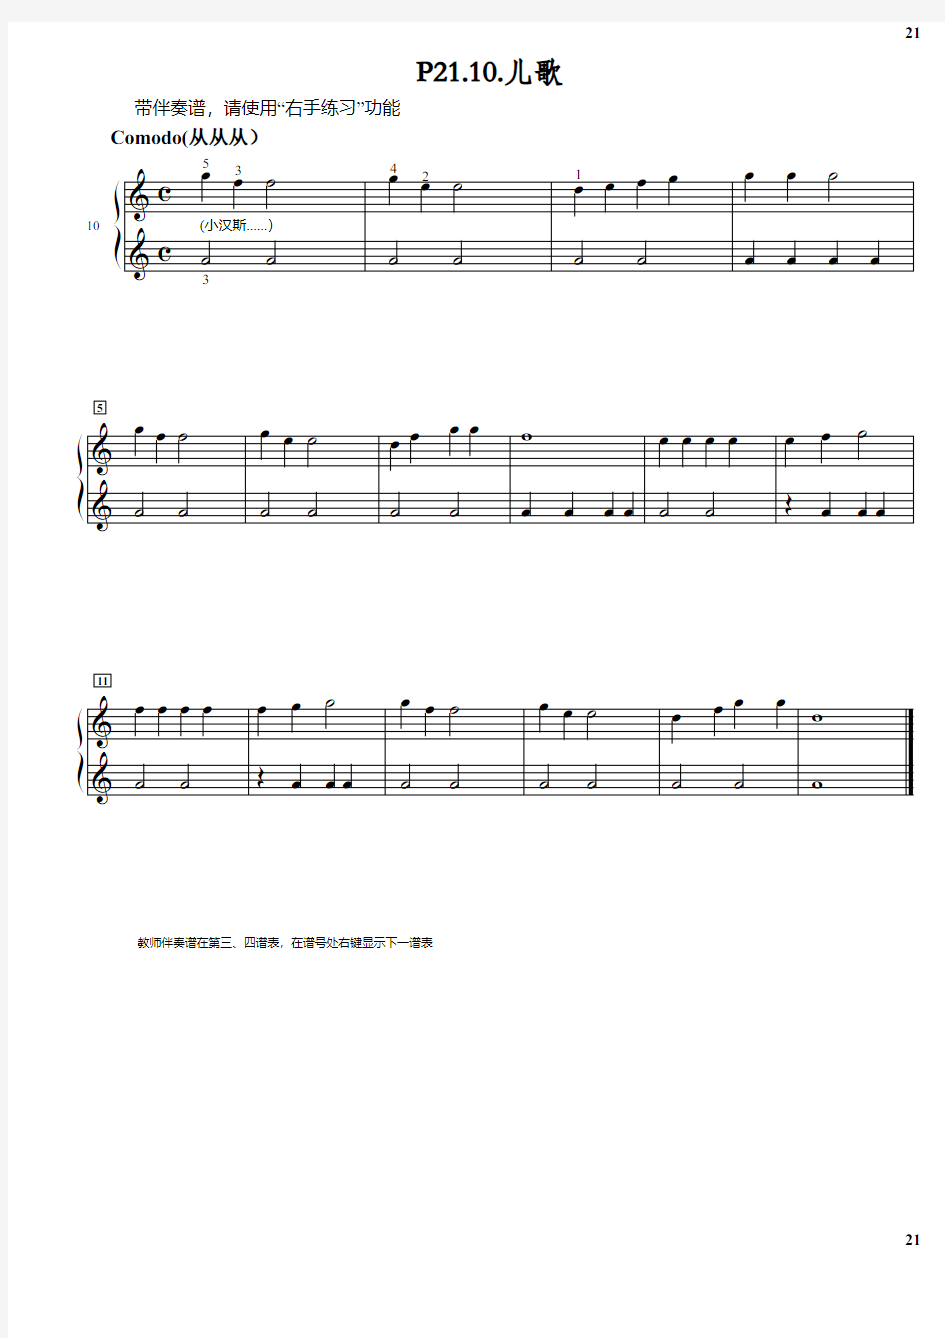 拜厄钢琴基本教程 第1阶段.P21.10 原版 正谱 钢琴谱 五线谱.pdf